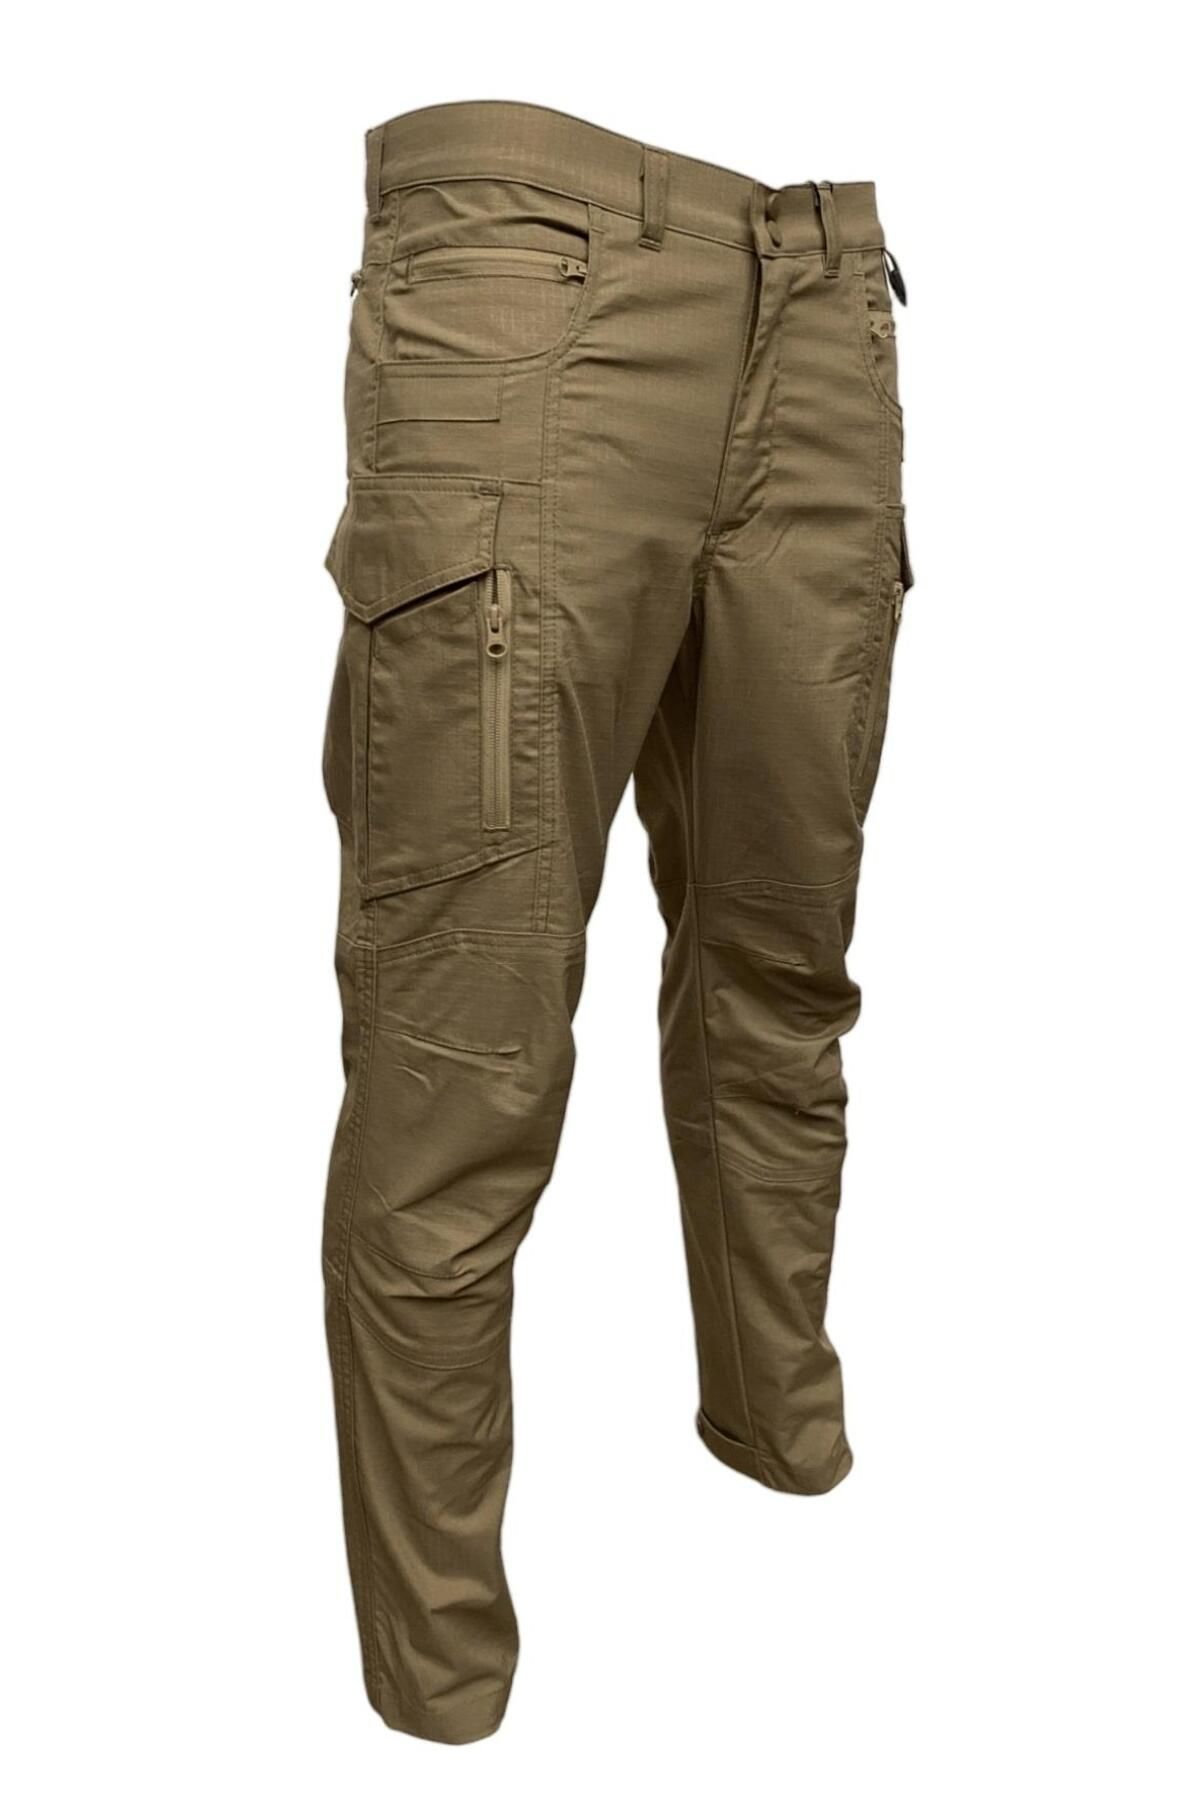 Combat Tactical Pantolon Tactıcal - 516